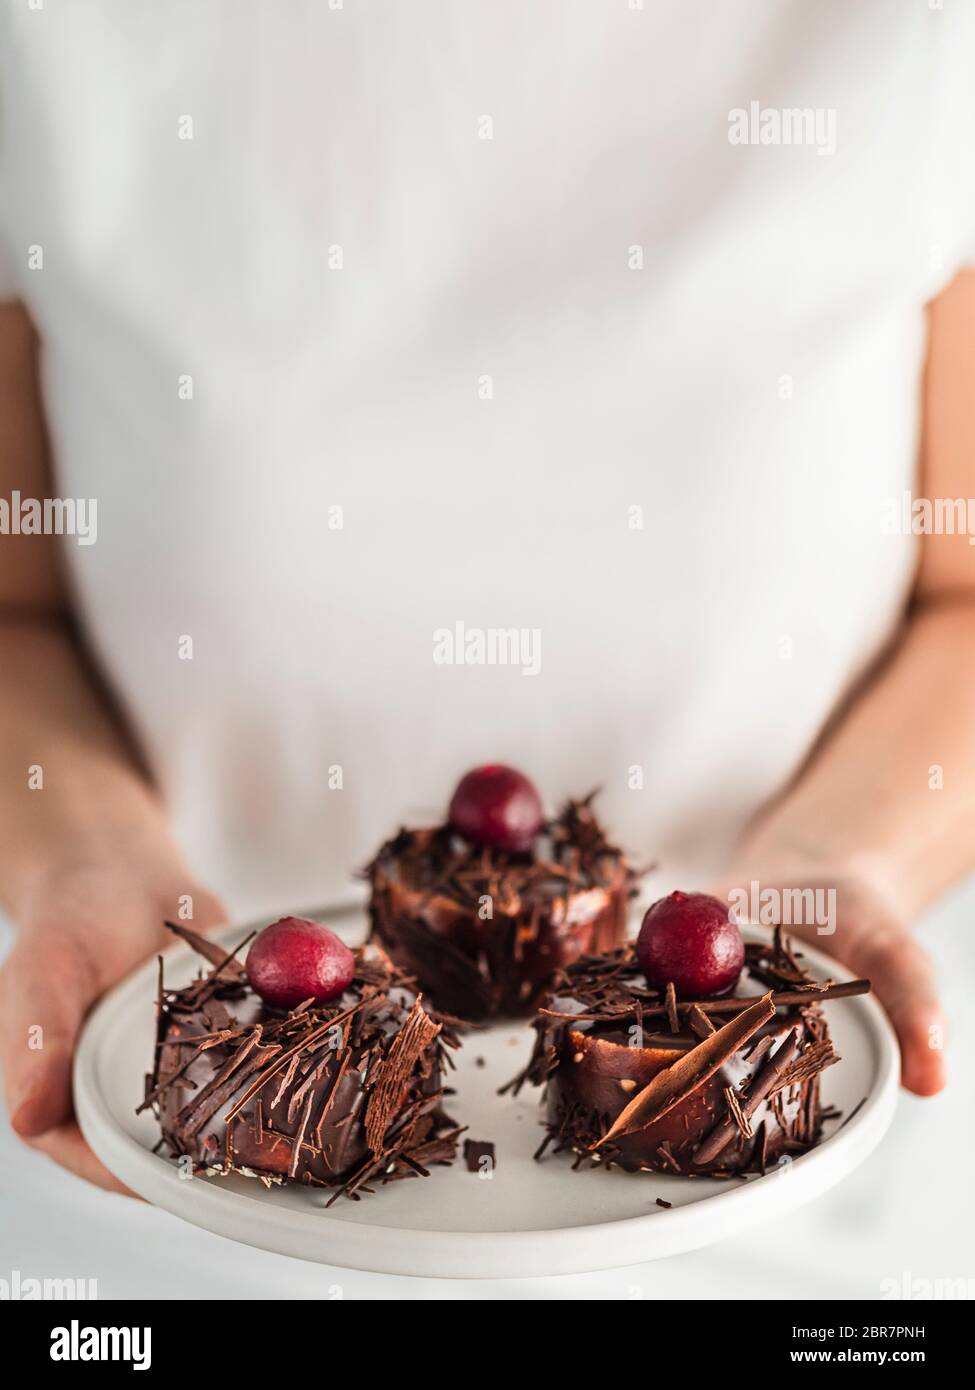 Frau in weißem T-Shirt hält Teller mit drei Mini-schwarzen Wald Kuchen mit Kirsche und Schokolade Scherben. Vertikal. Kopieren Sie den Bereich oben Stockfoto